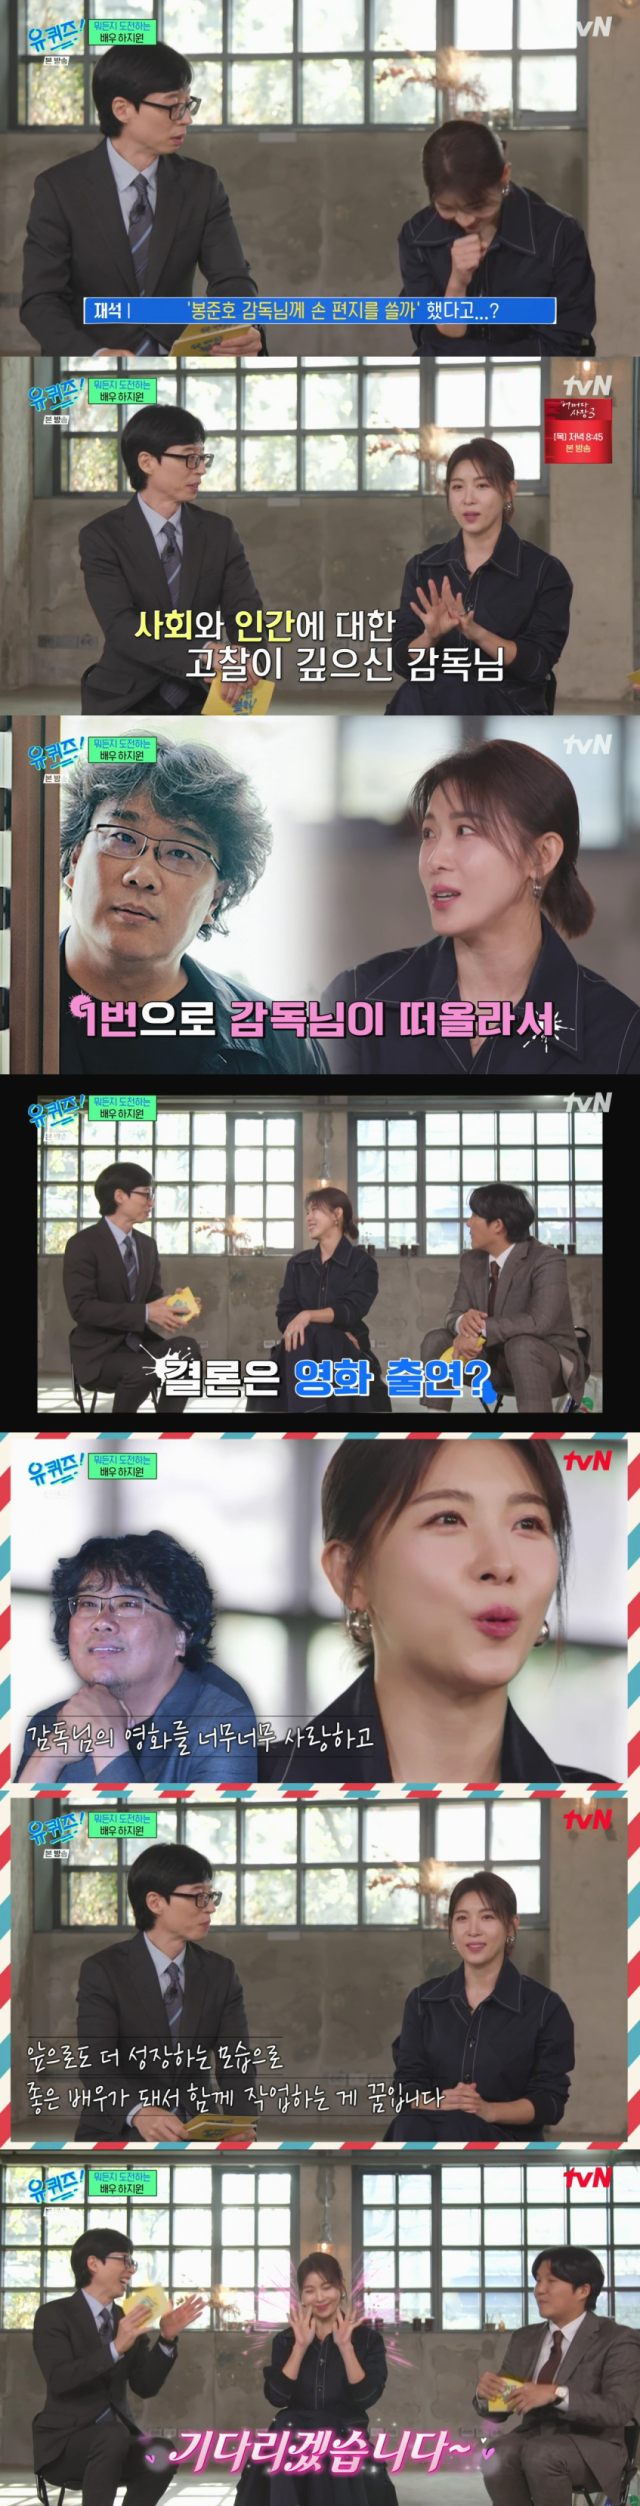 은퇴 고민을 했다고 밝힌 배우 하지원/케이블채널 tvN 예능프로그램 '유 퀴즈 온 더 블럭' 방송 캡처